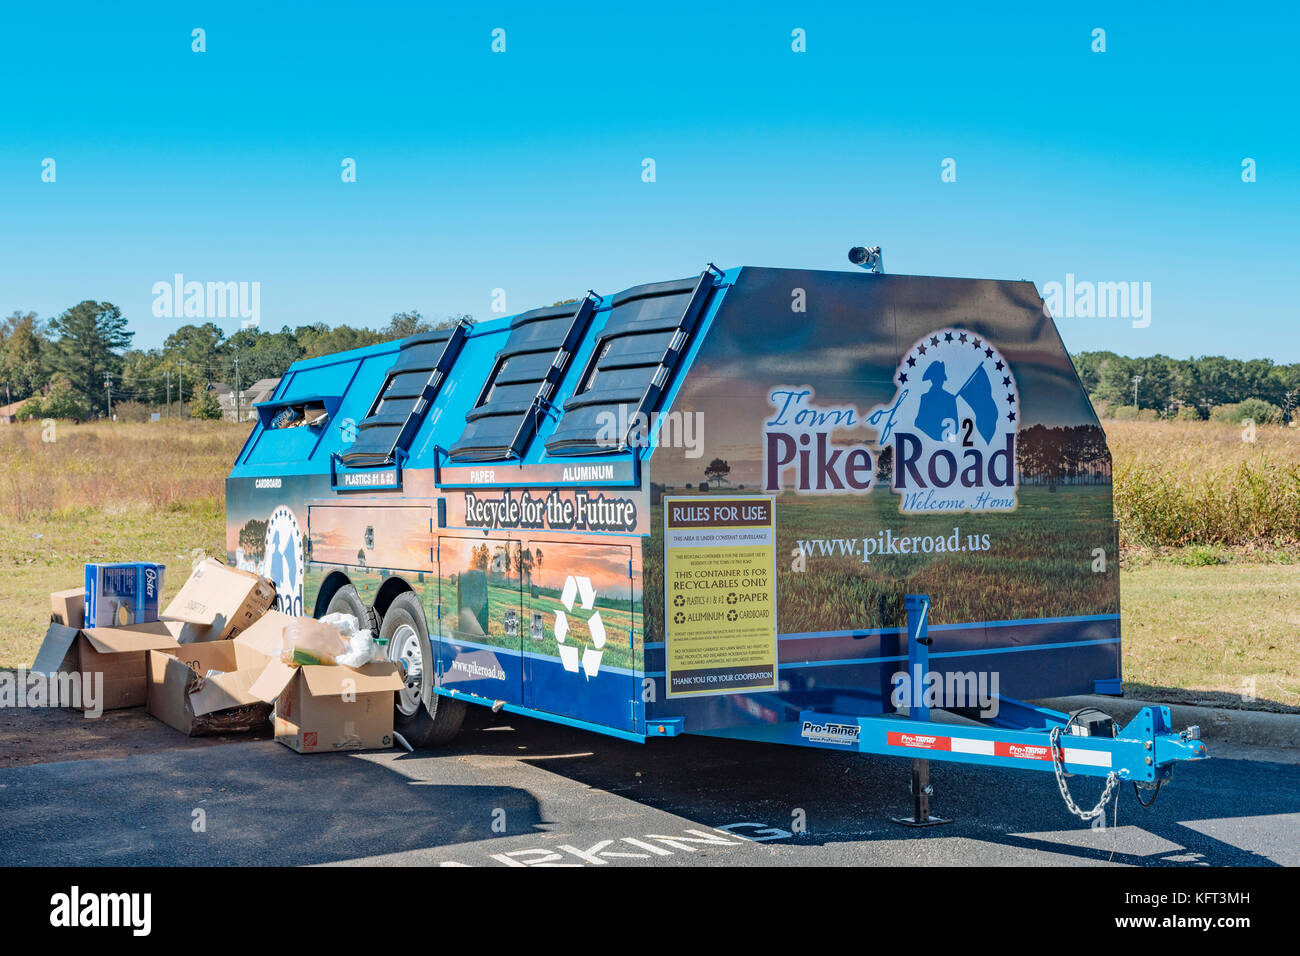 Il riciclaggio rimorchi, scomparti, a promuovere il corretto smaltimento dei rifiuti nella piccola cittadina di pike road, ALABAMA, Stati Uniti d'America. Foto Stock